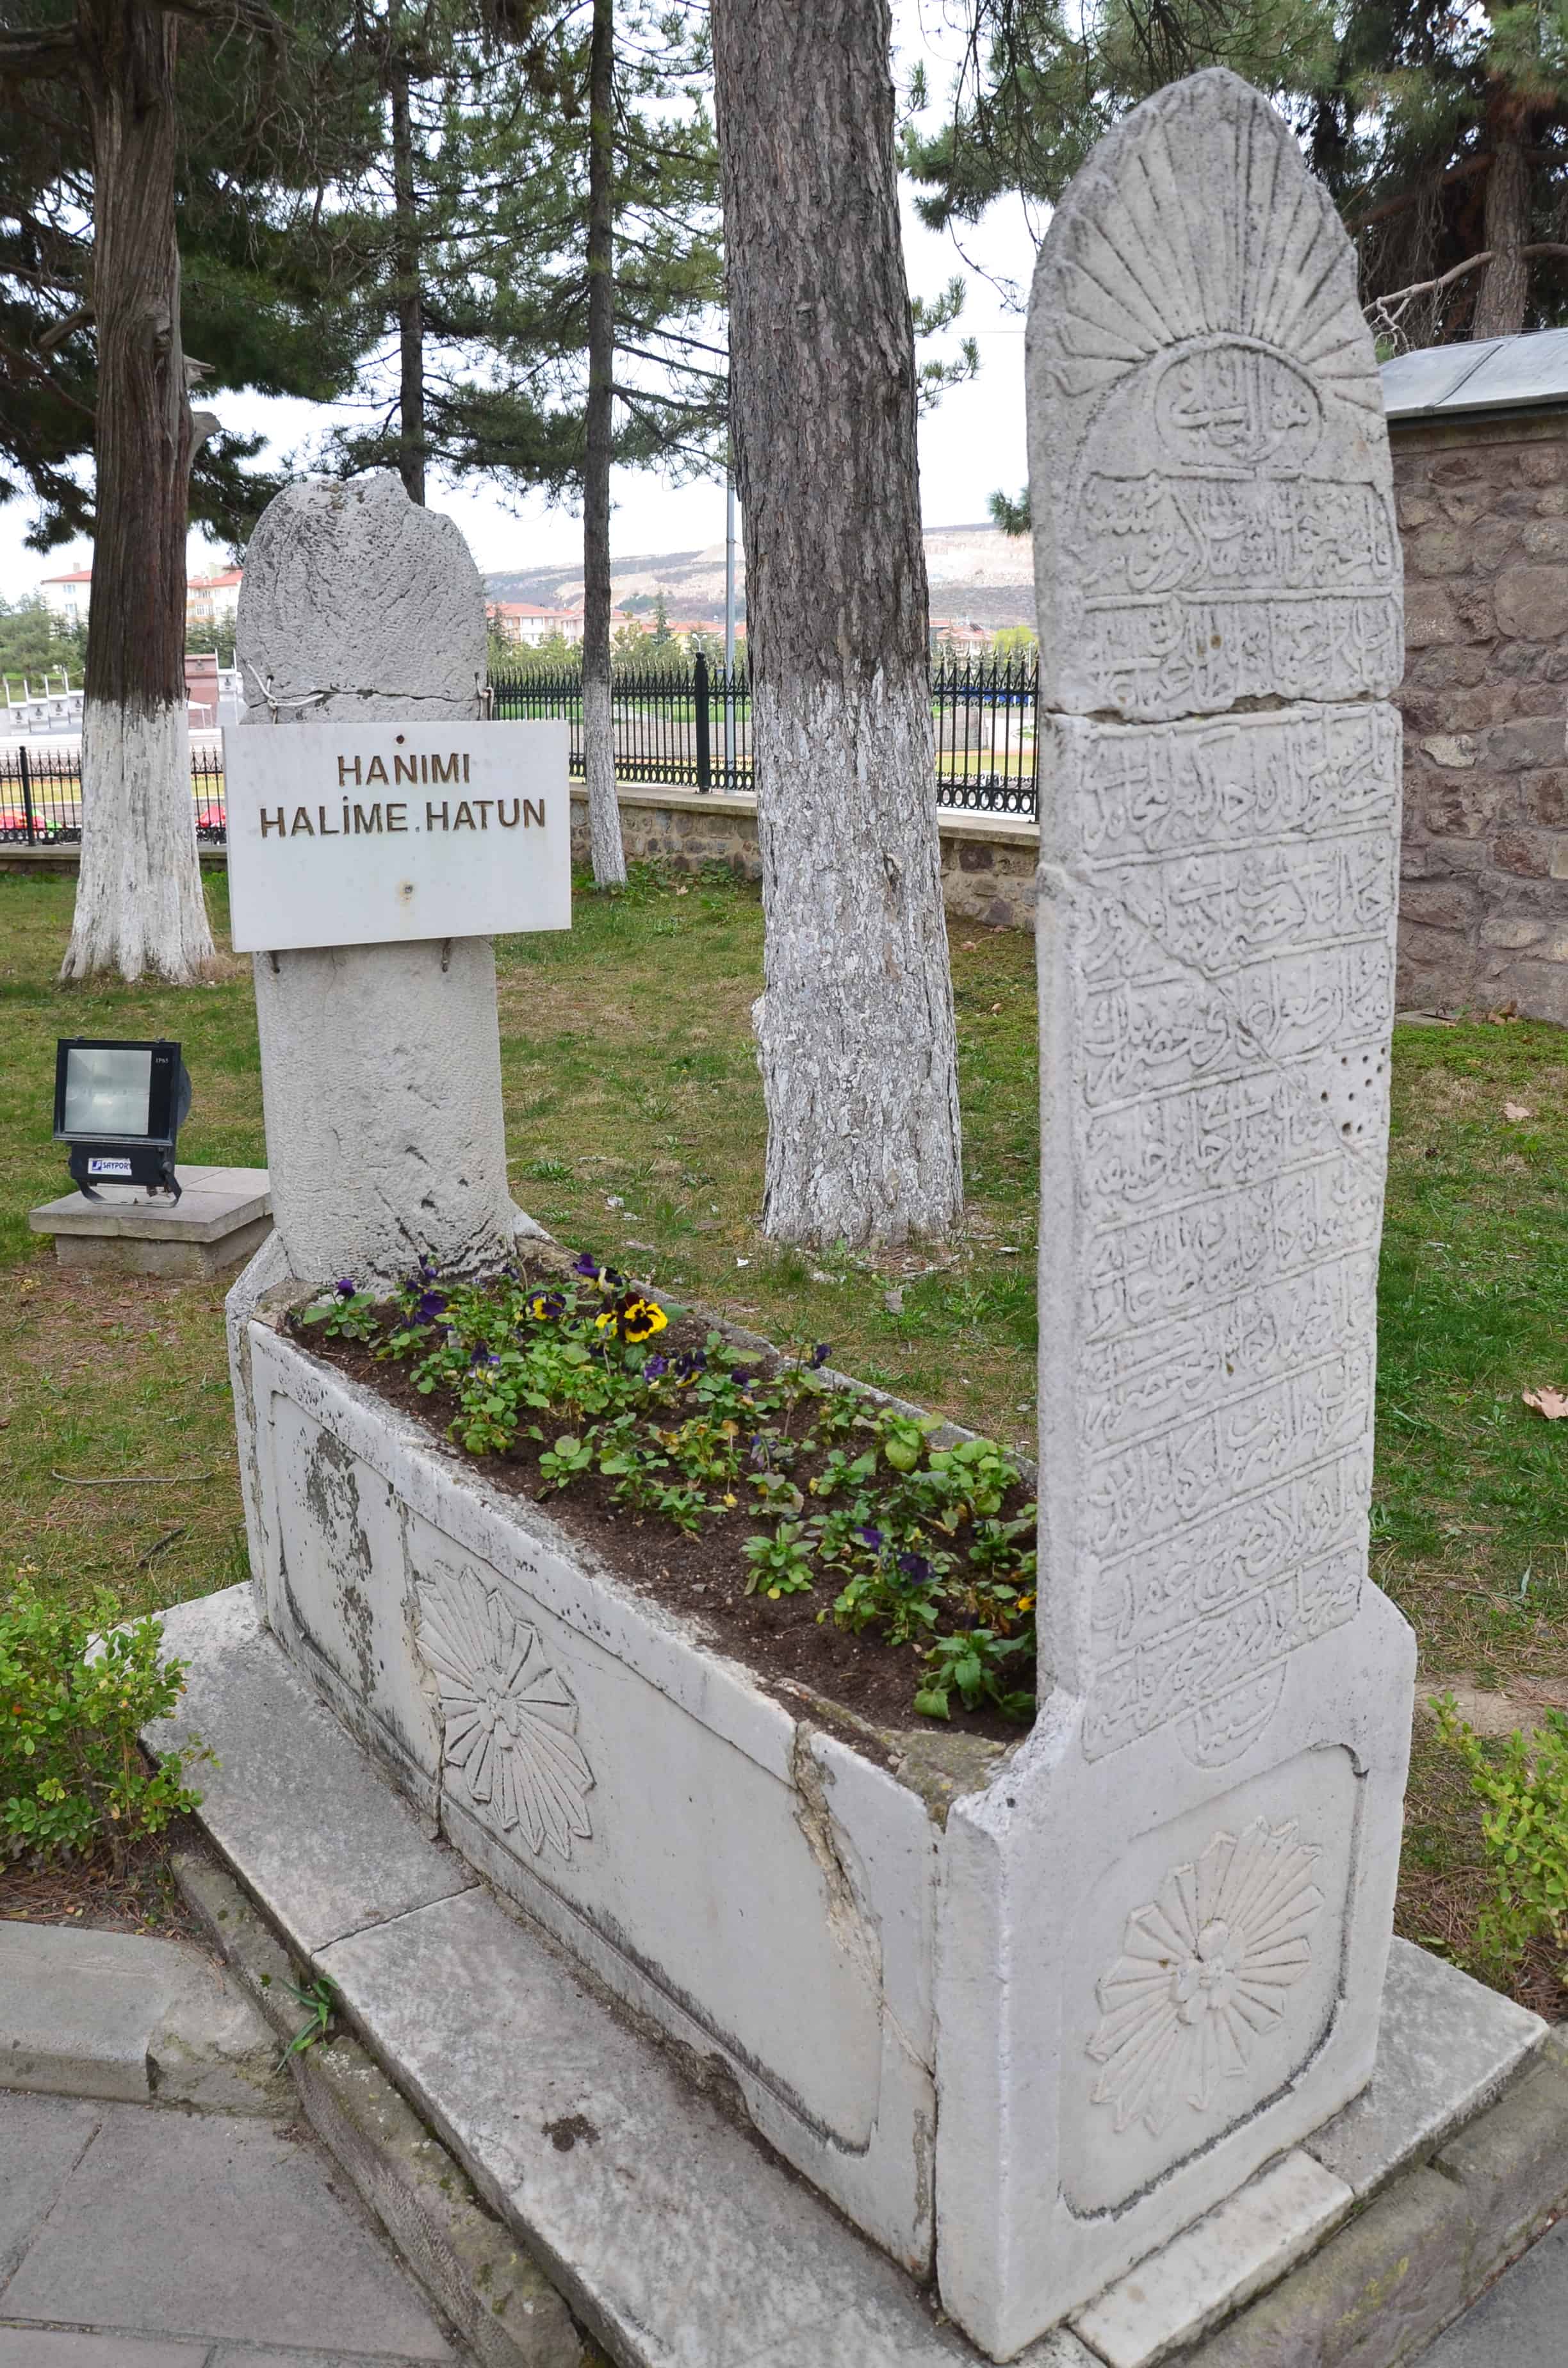 Tomb of Hanımı Halime Hatun at Ertuğrul Gazi Türbesi in Söğüt, Turkey